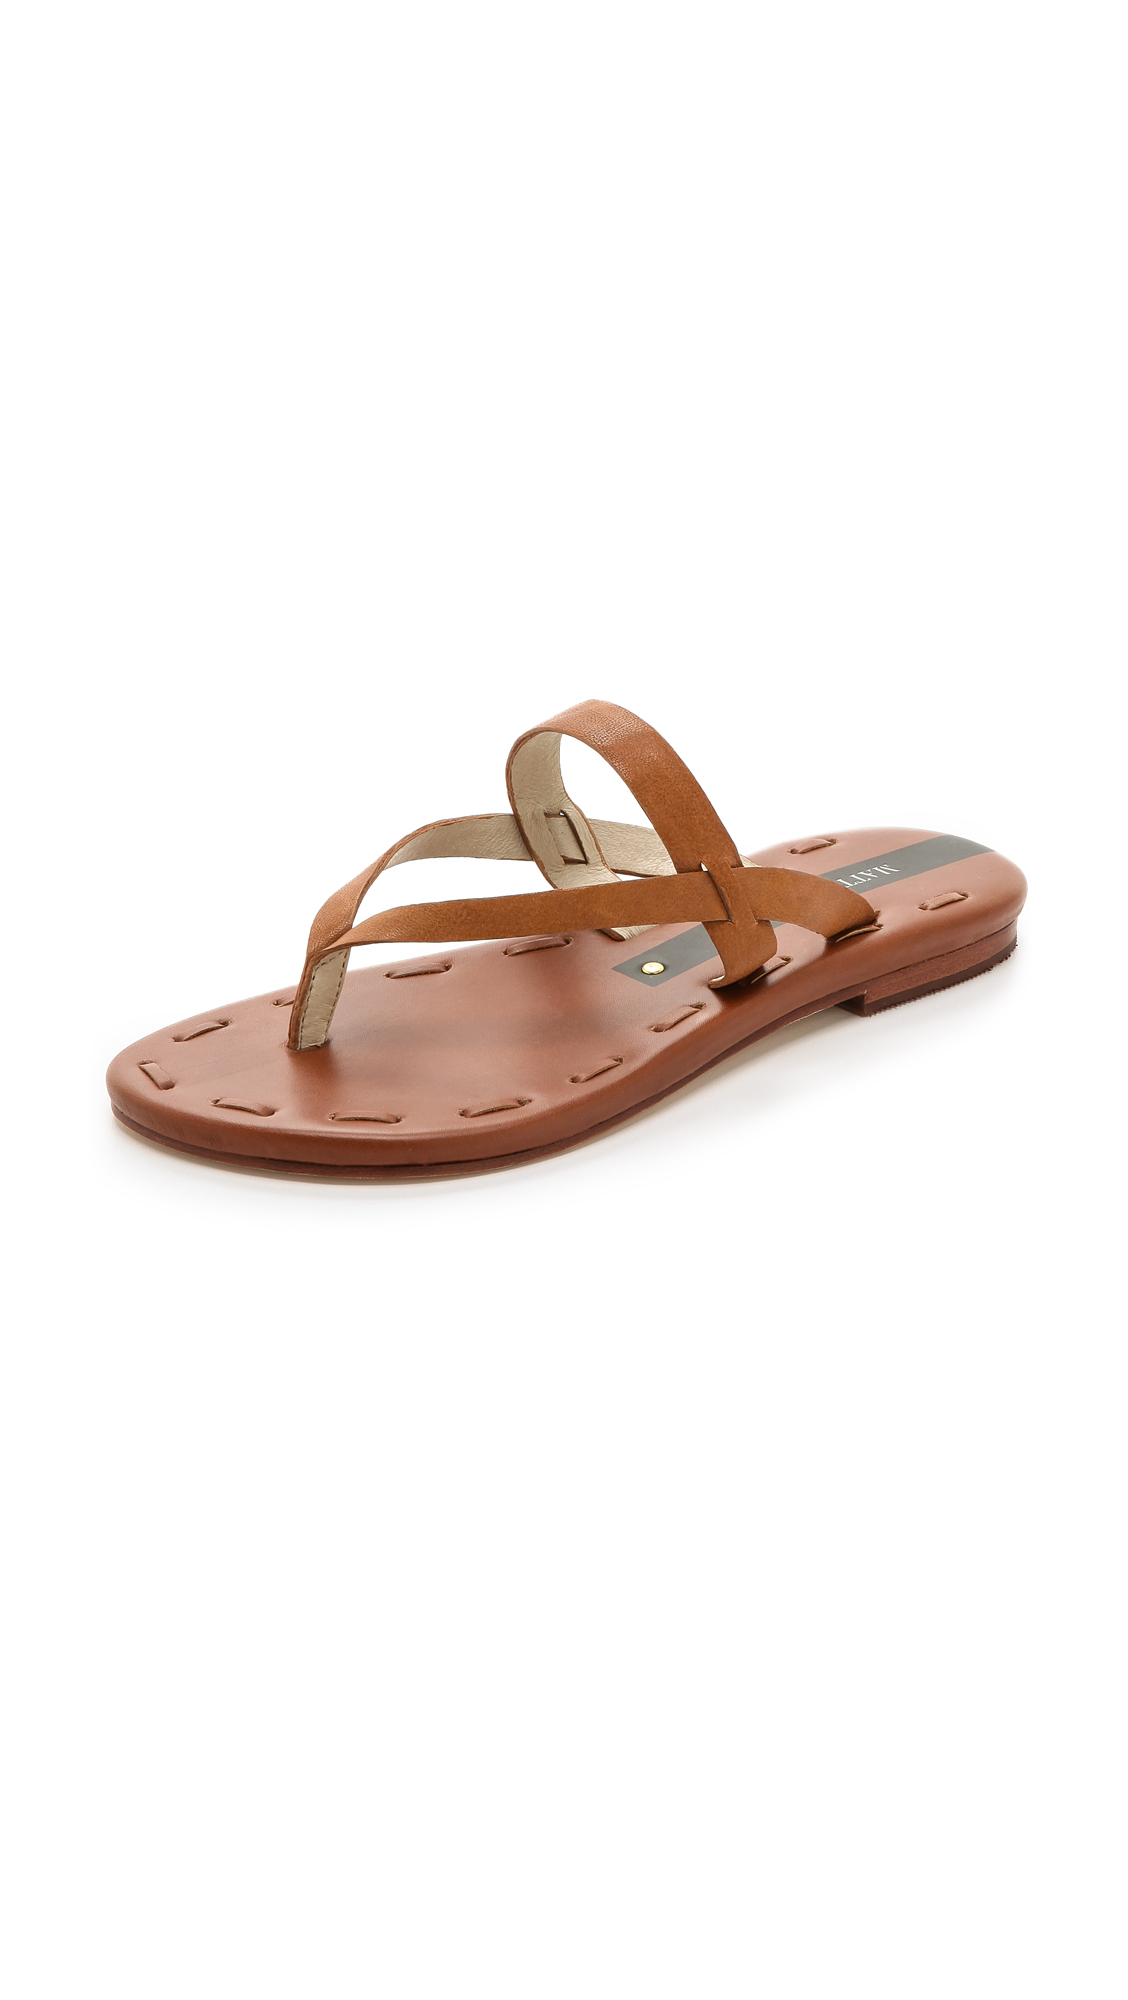 Lyst - Matt Bernson Love Sandals in Brown